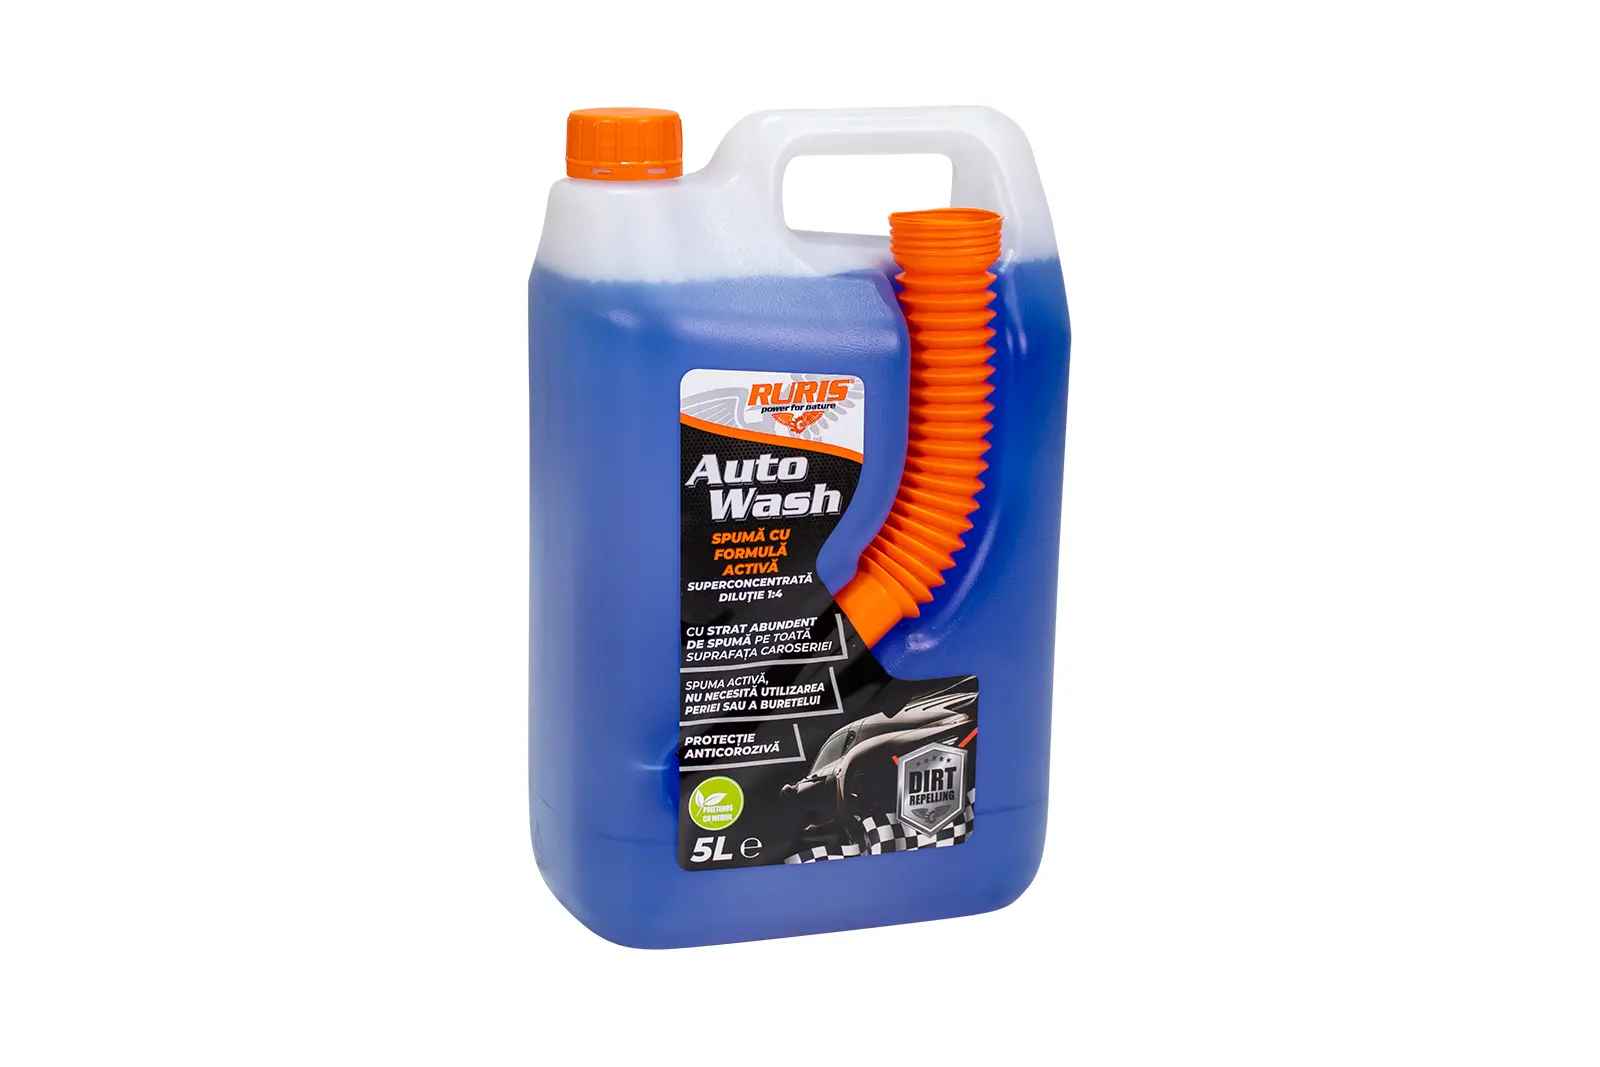 Detergent RURIS Auto Wash 5L